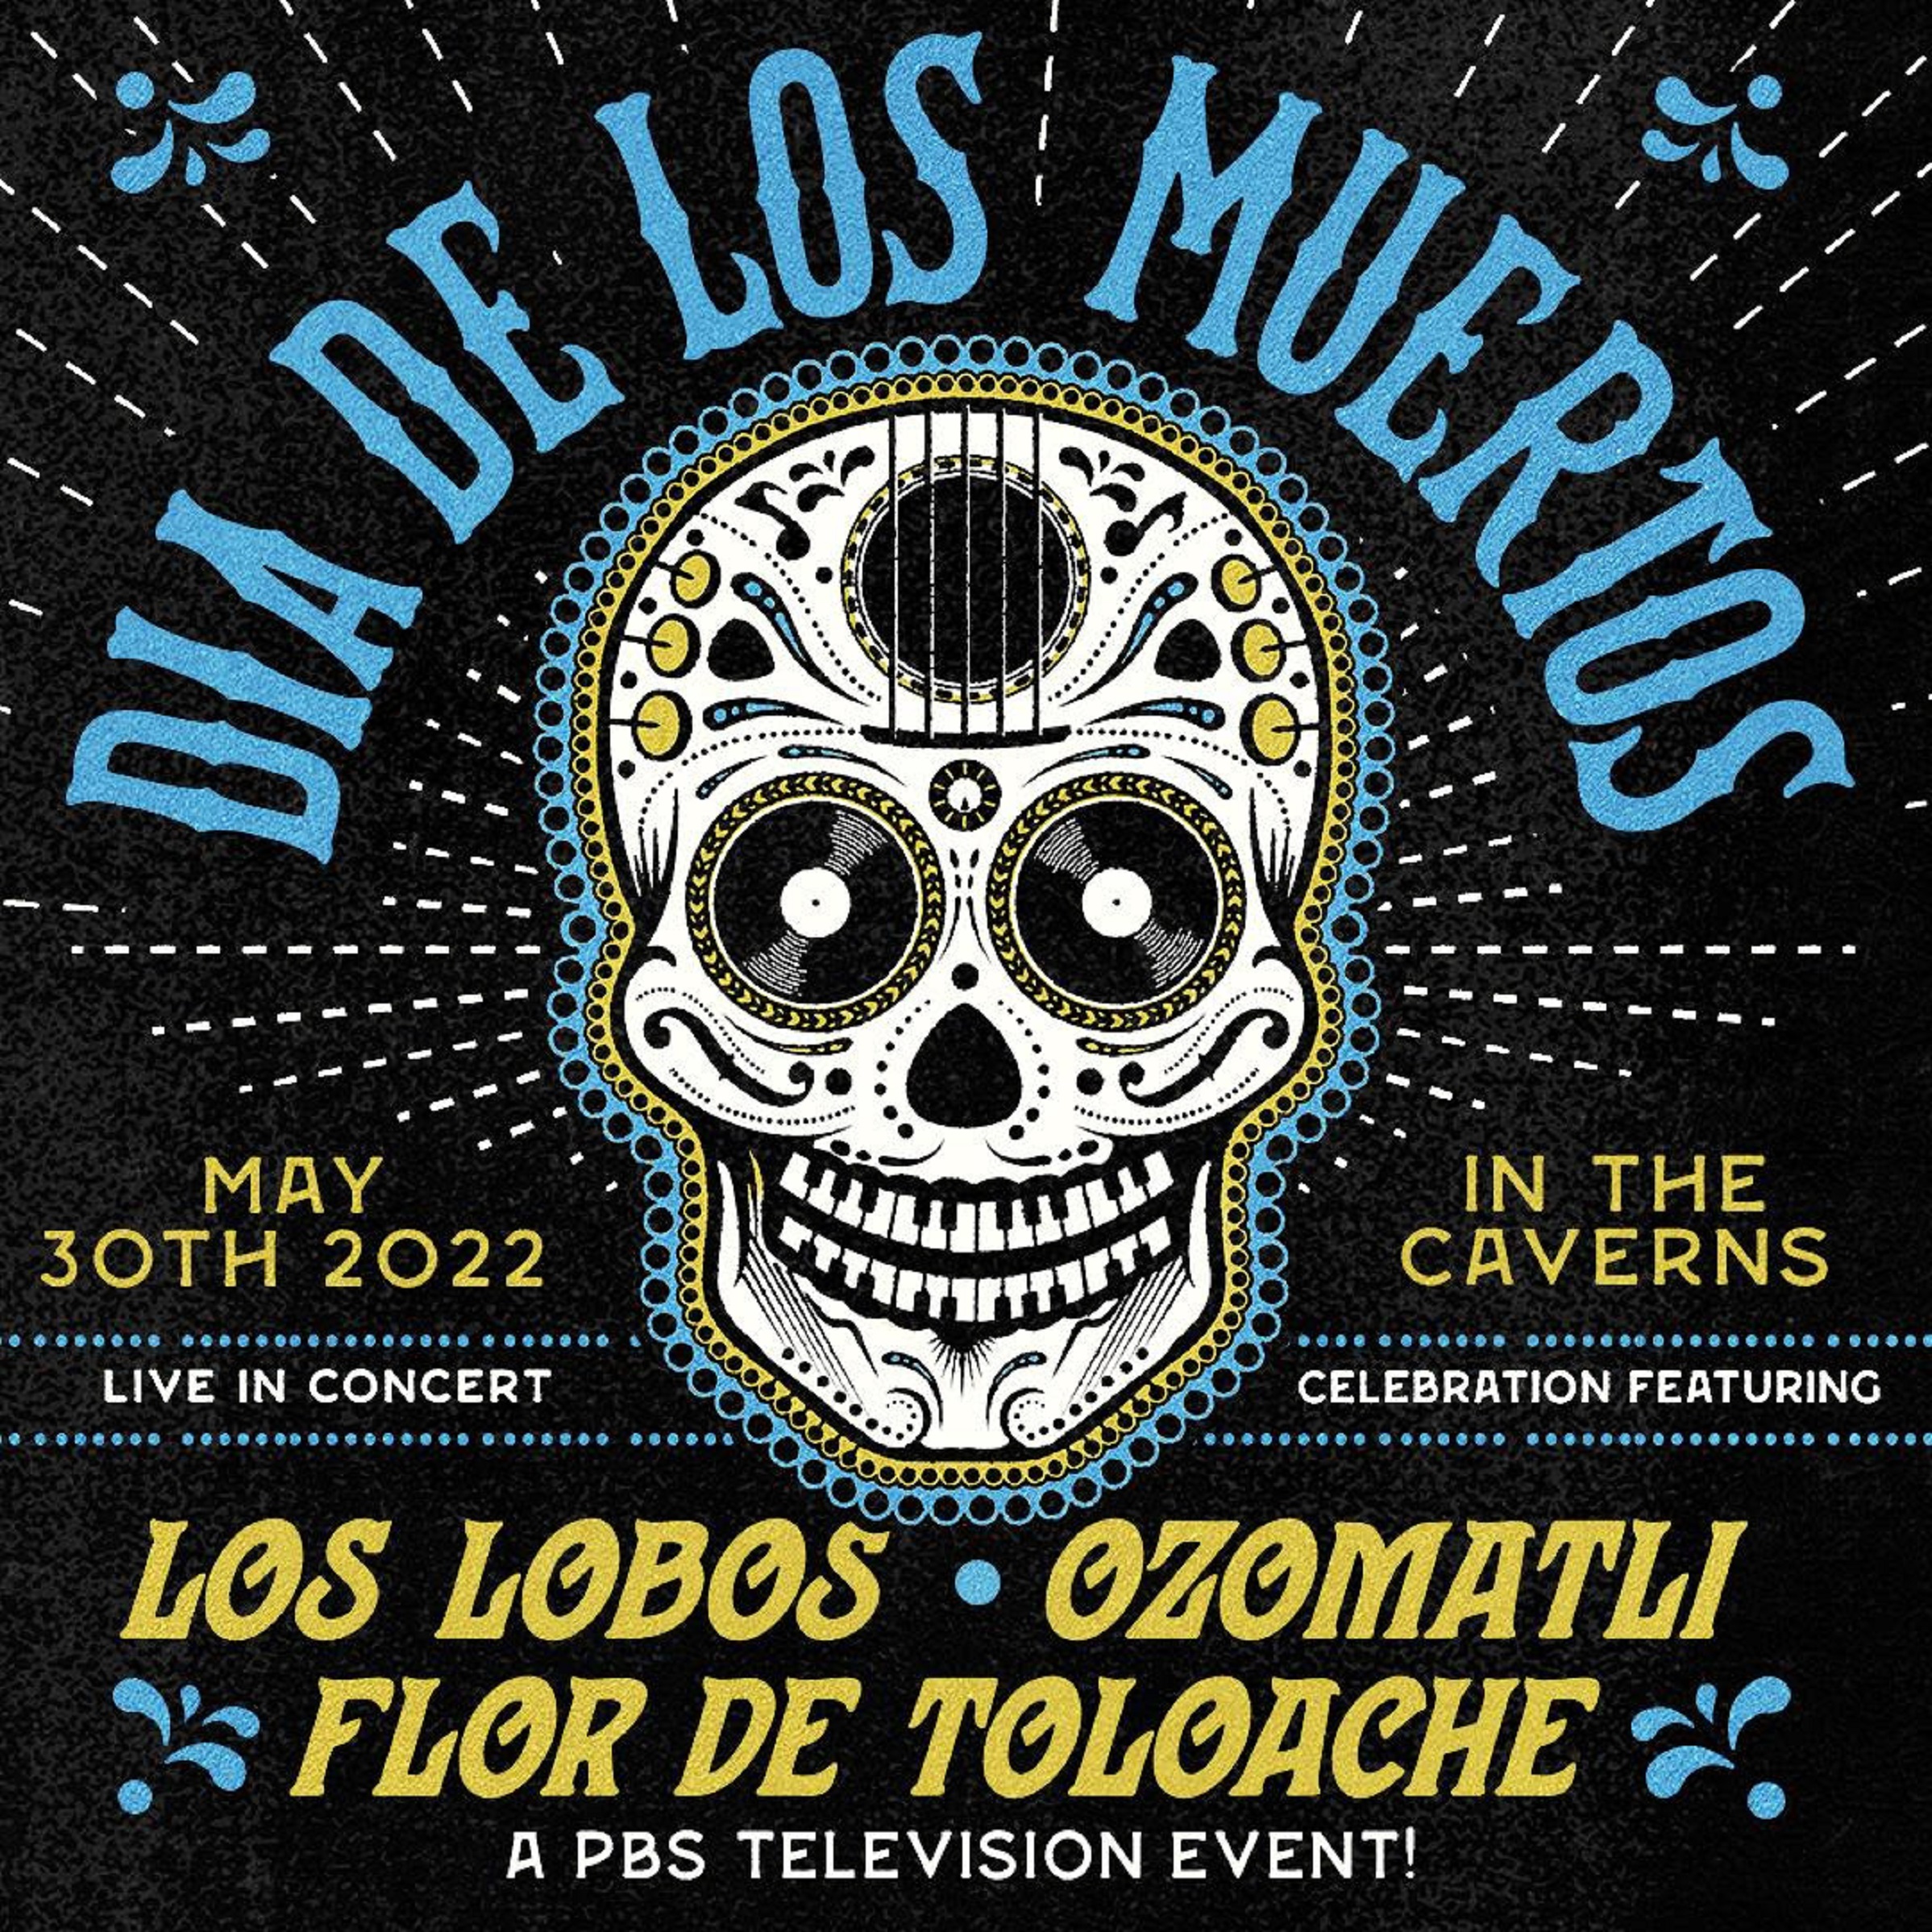 Los Lobos Celebrates Dia De Los Muertos Underground